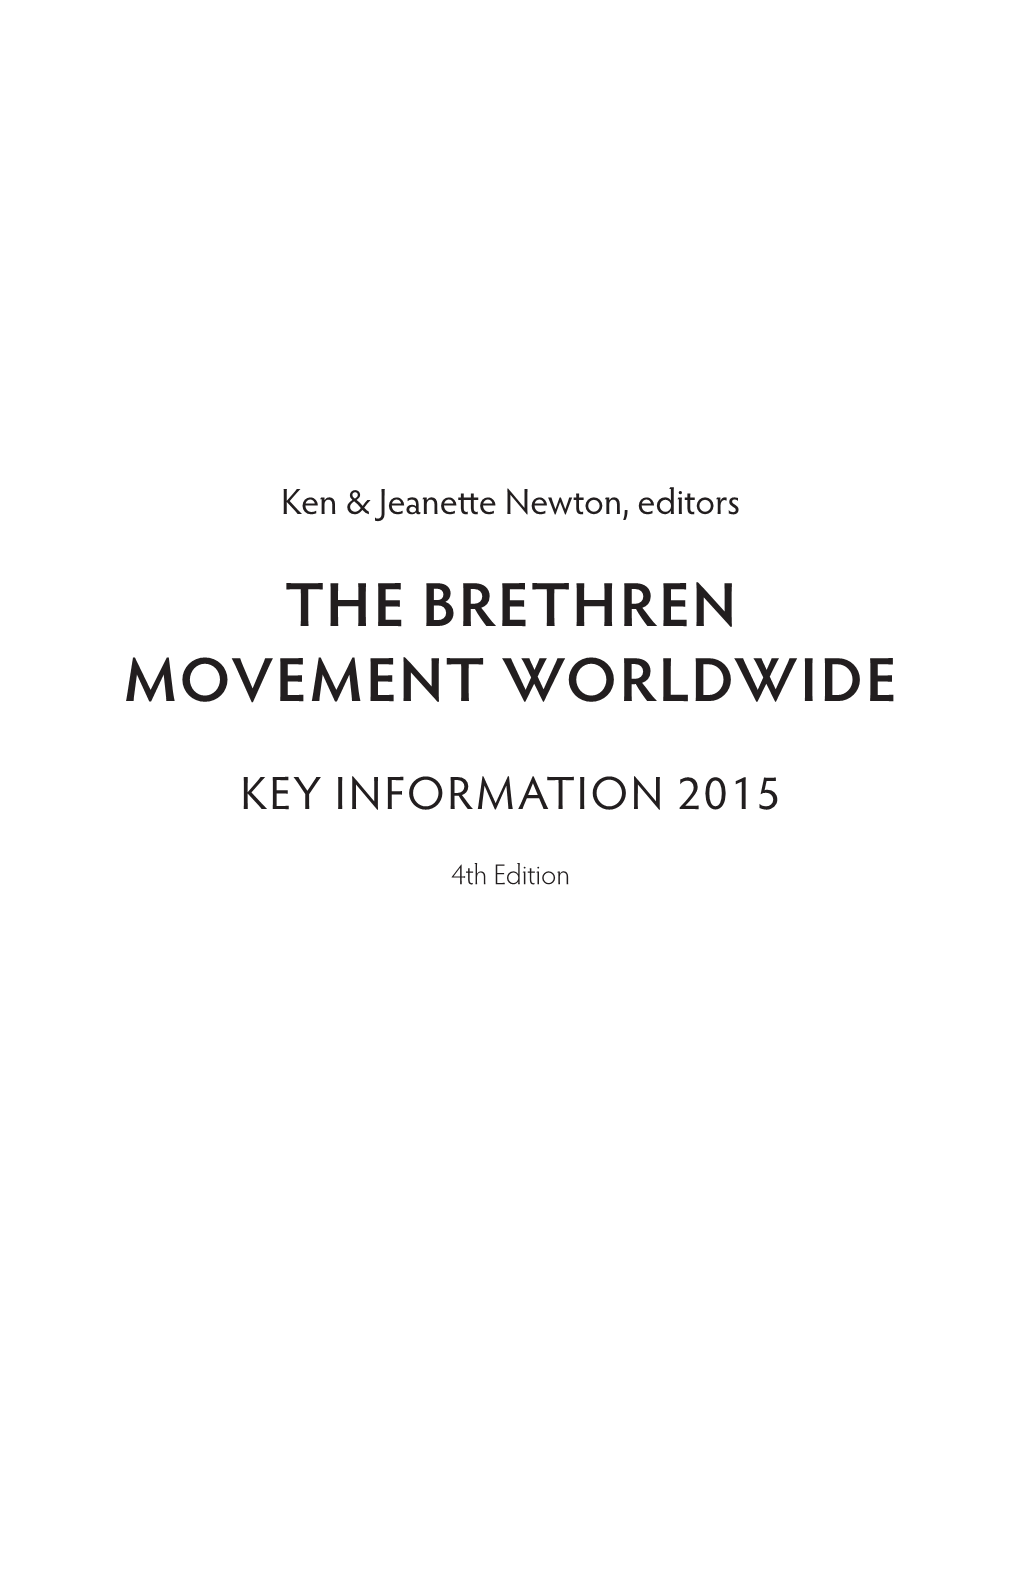 The Brethren Movement Worldwide